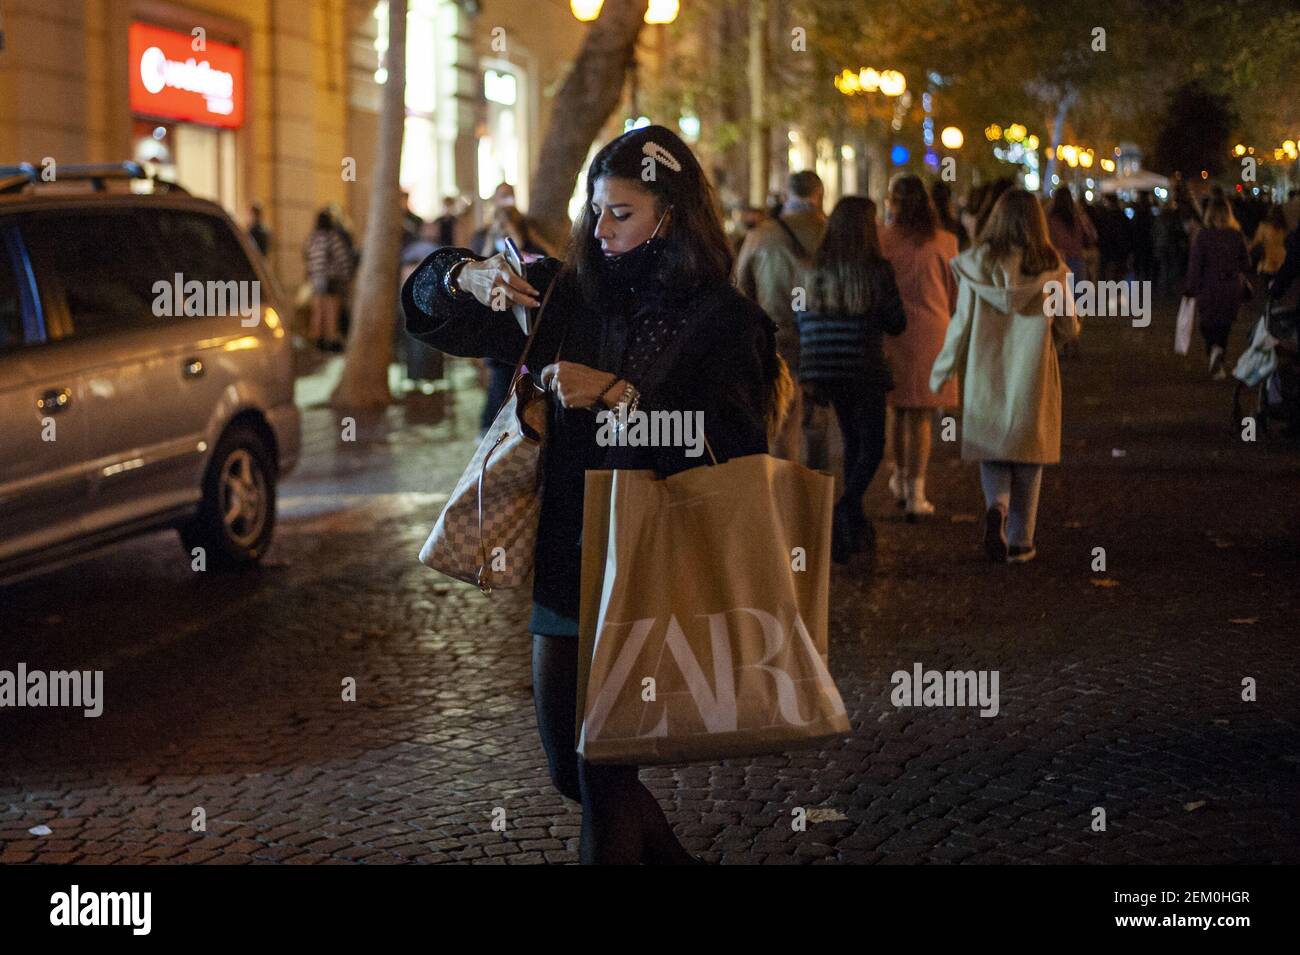 Une femme est vue portant un sac de shopping Zara. La vie quotidienne dans  le quartier branché de Vomero avant le début de la fermeture de la zone  rouge à Naples (photo